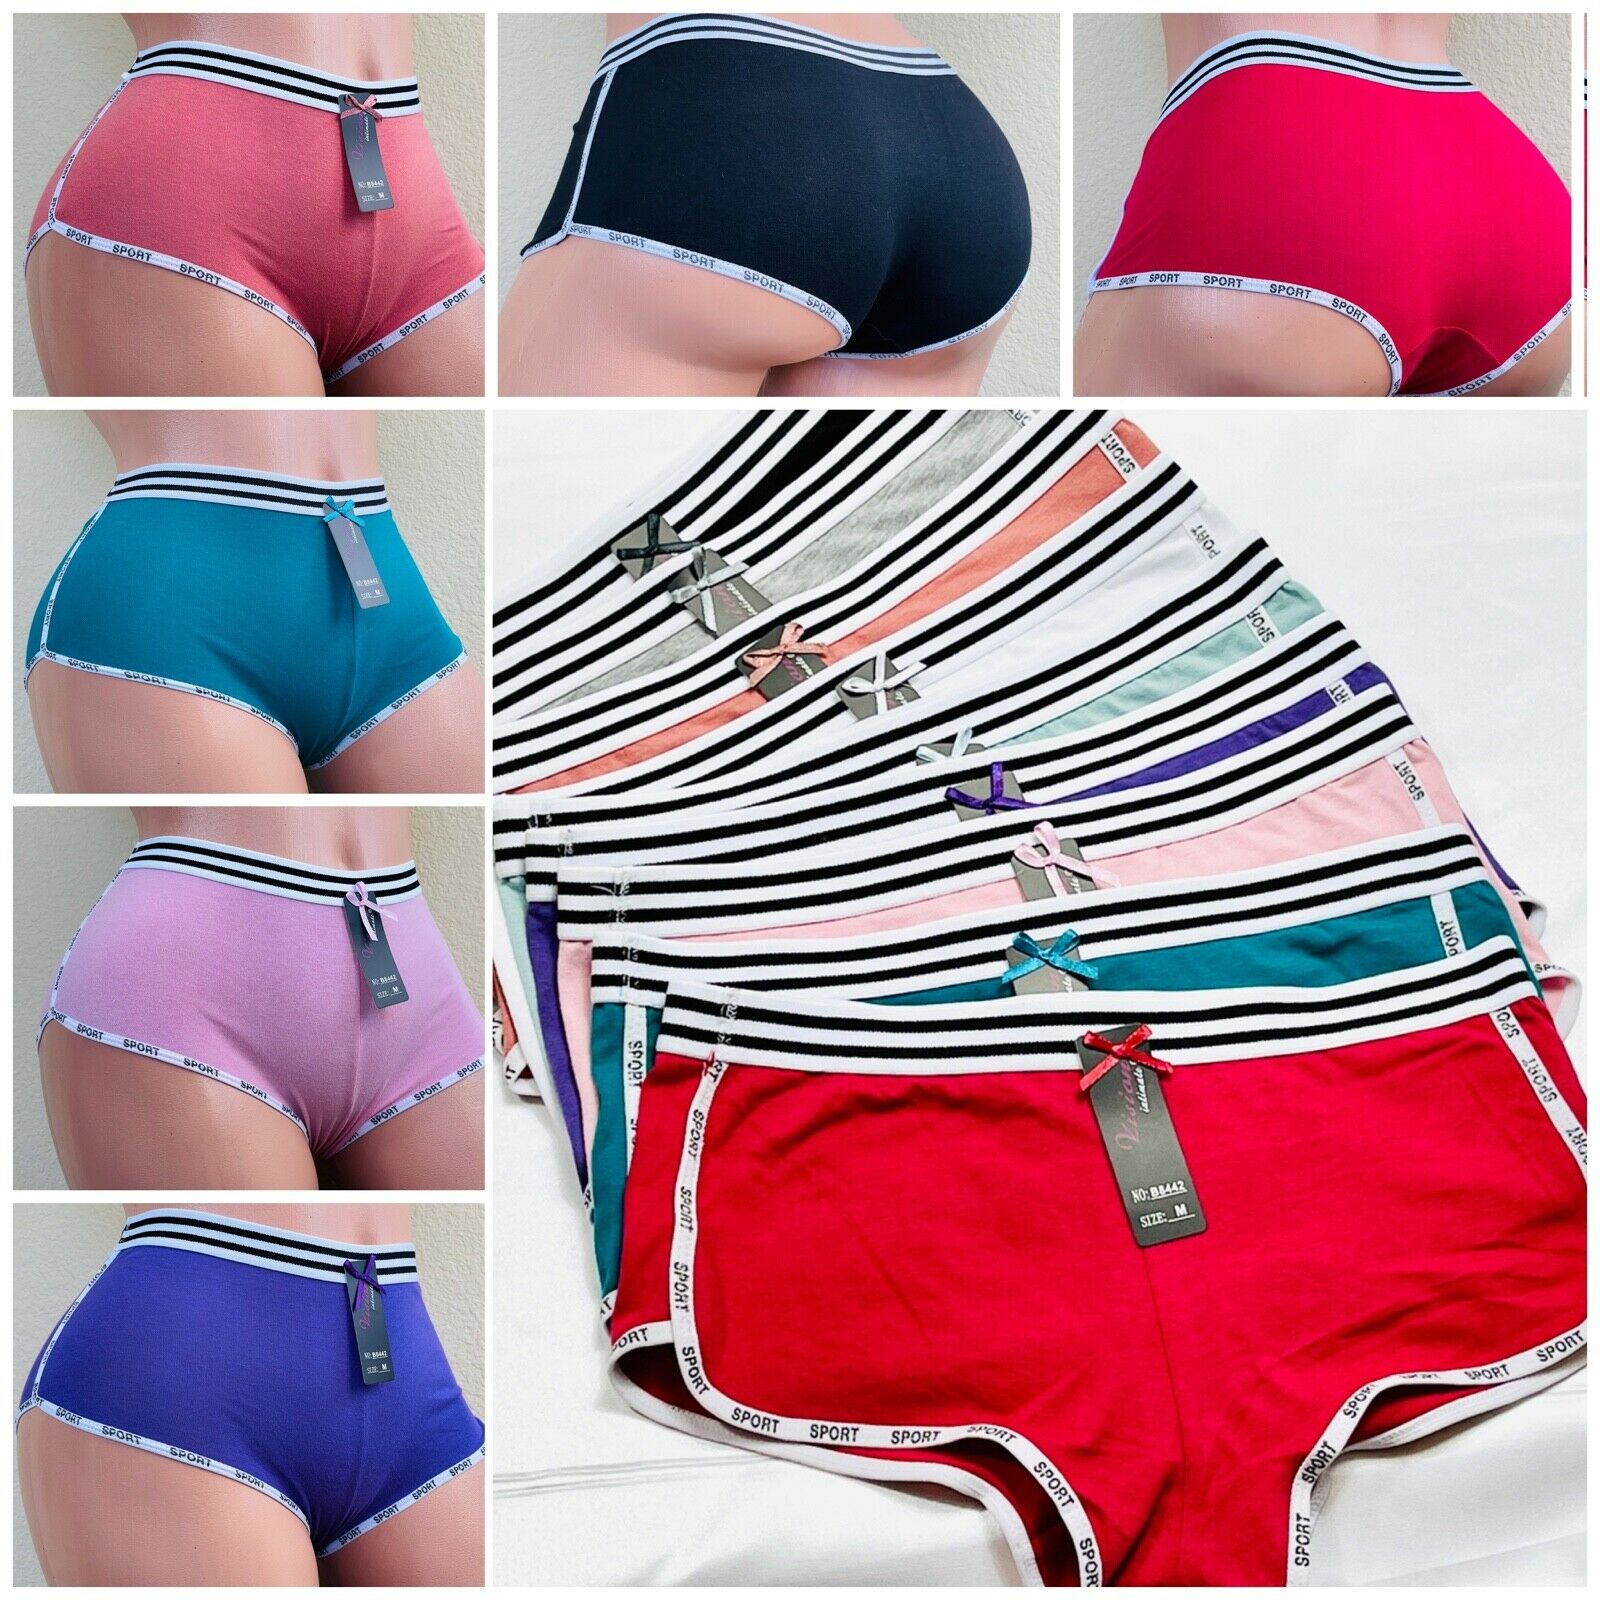 6-12 Boyshorts Sports Sexy 95% Cotton Panties Undies Active Wear Underwear S-5xl